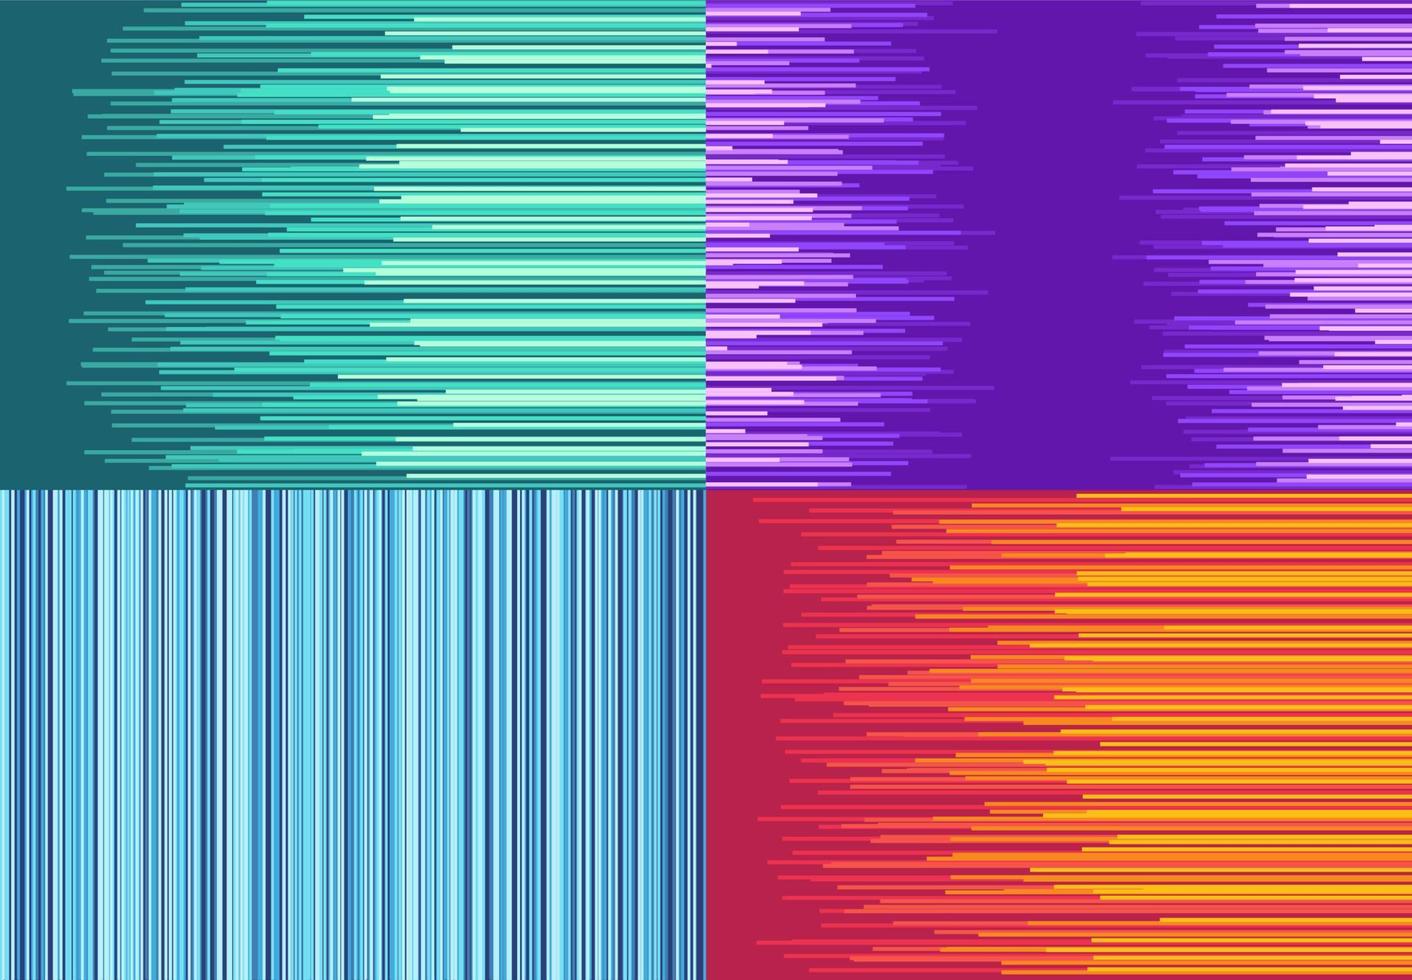 uppsättning av fyra färgrik bakgrund med hetero rader. vektor illustration.